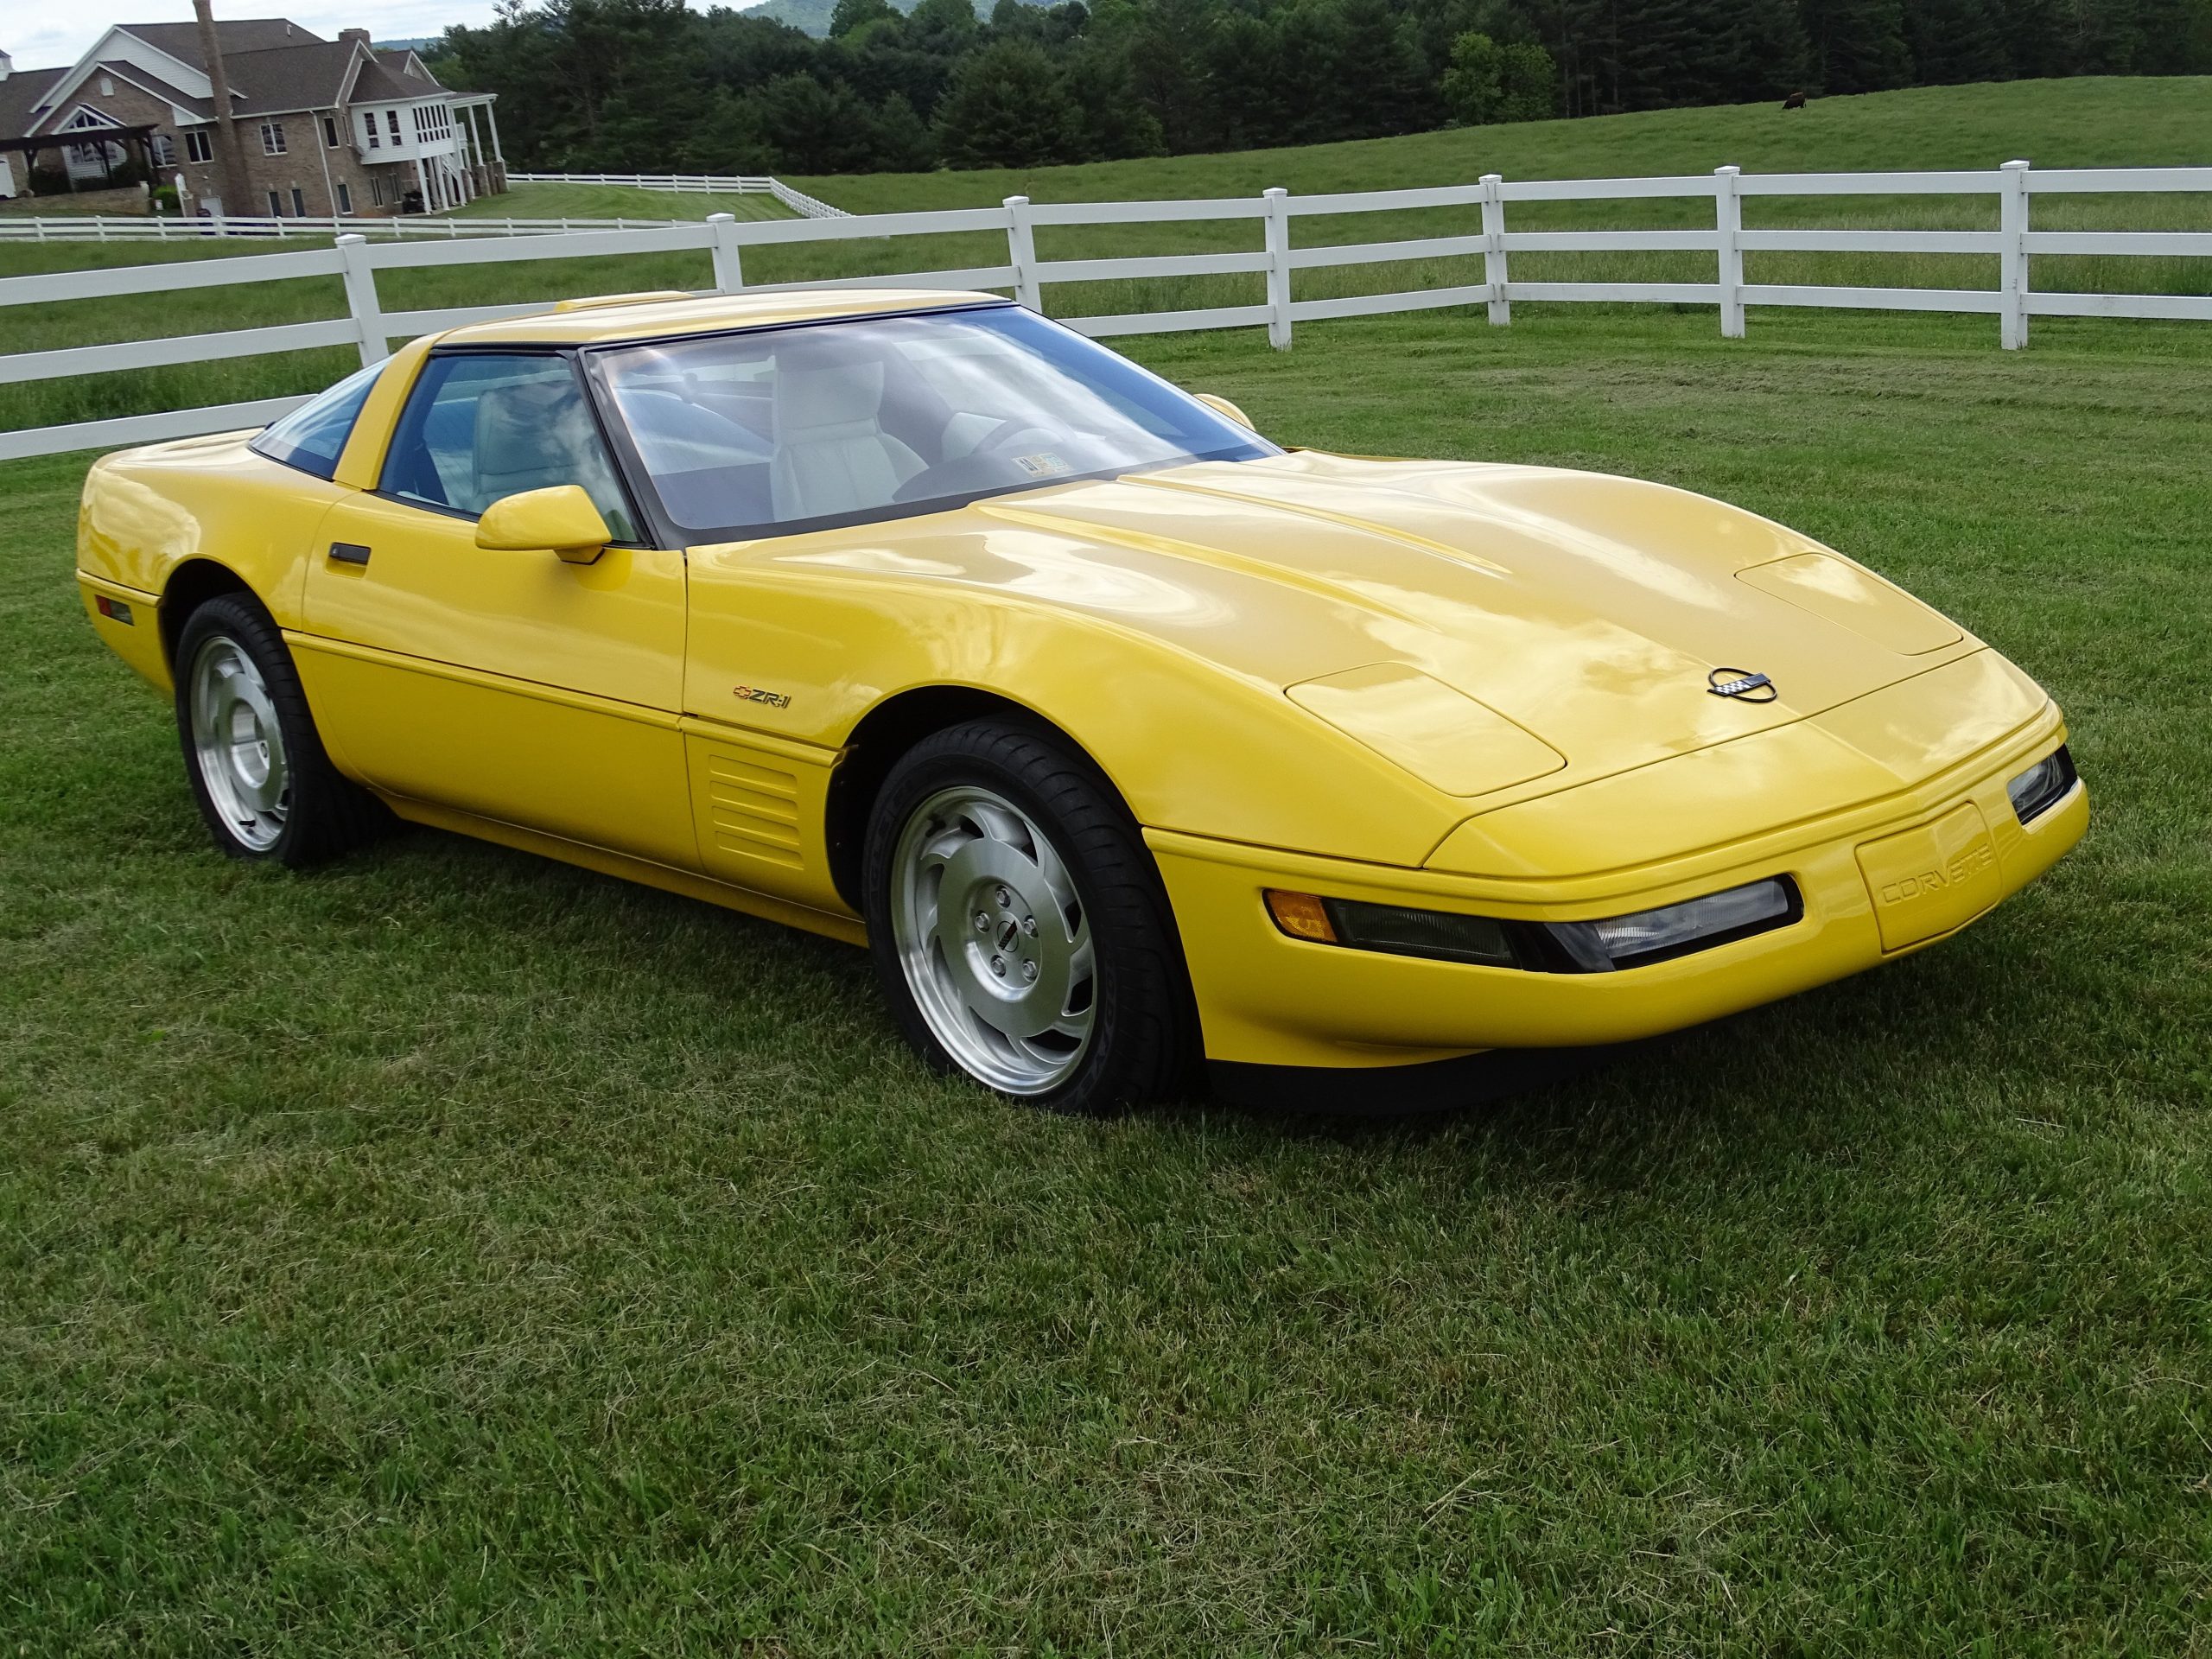 Corvette Of The Day: 1993 Chevrolet Corvette ZR1